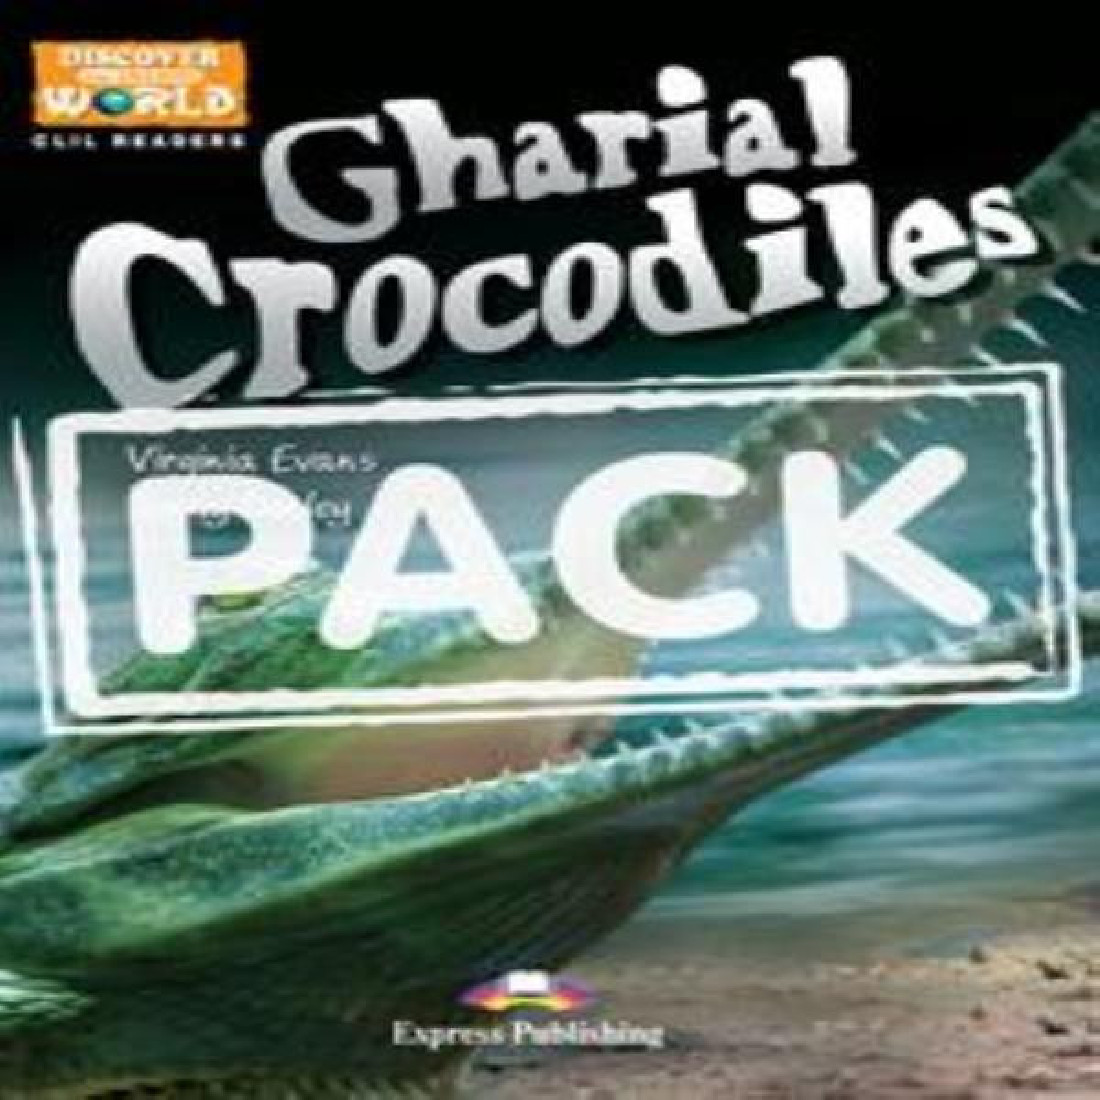 CHARIAL CROCODILES (+CD)